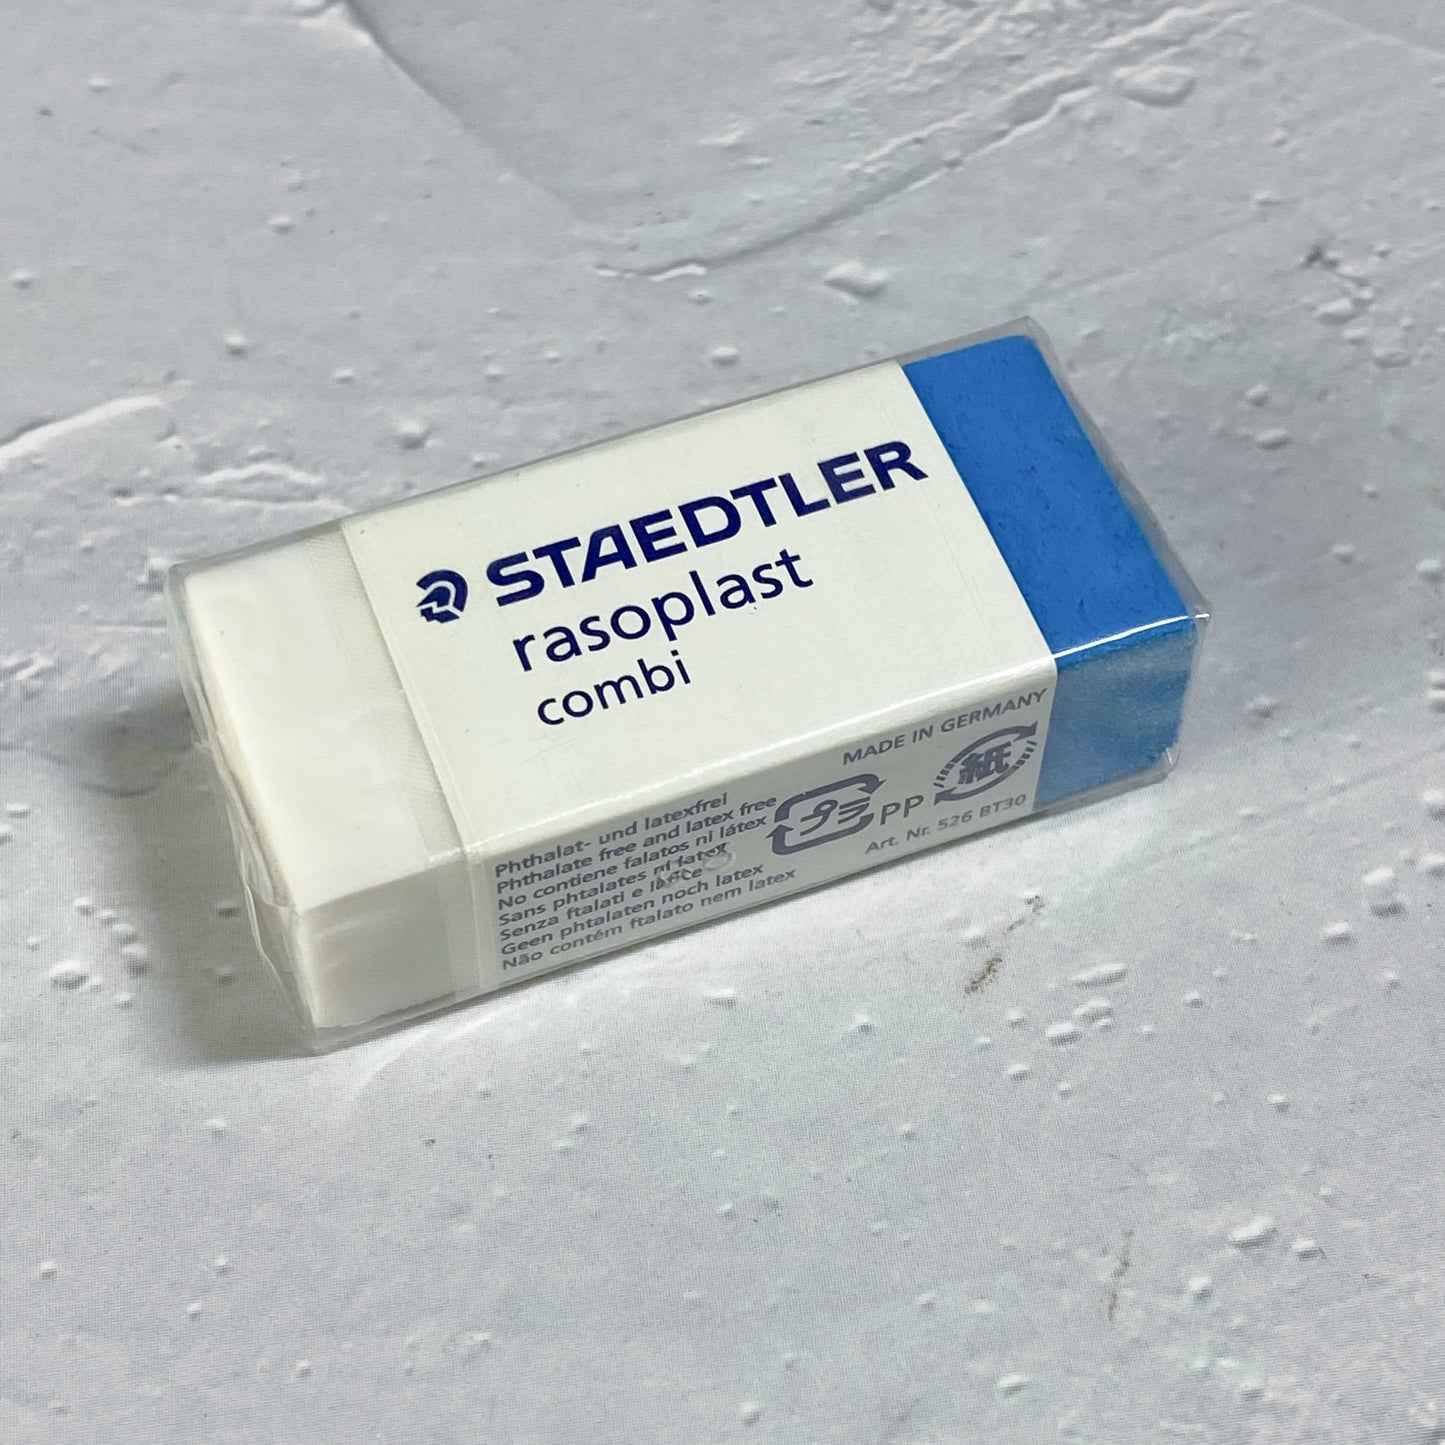 Staedtler Rasoplast Combi Eraser (Size: 33 x 19 x 13 mm)